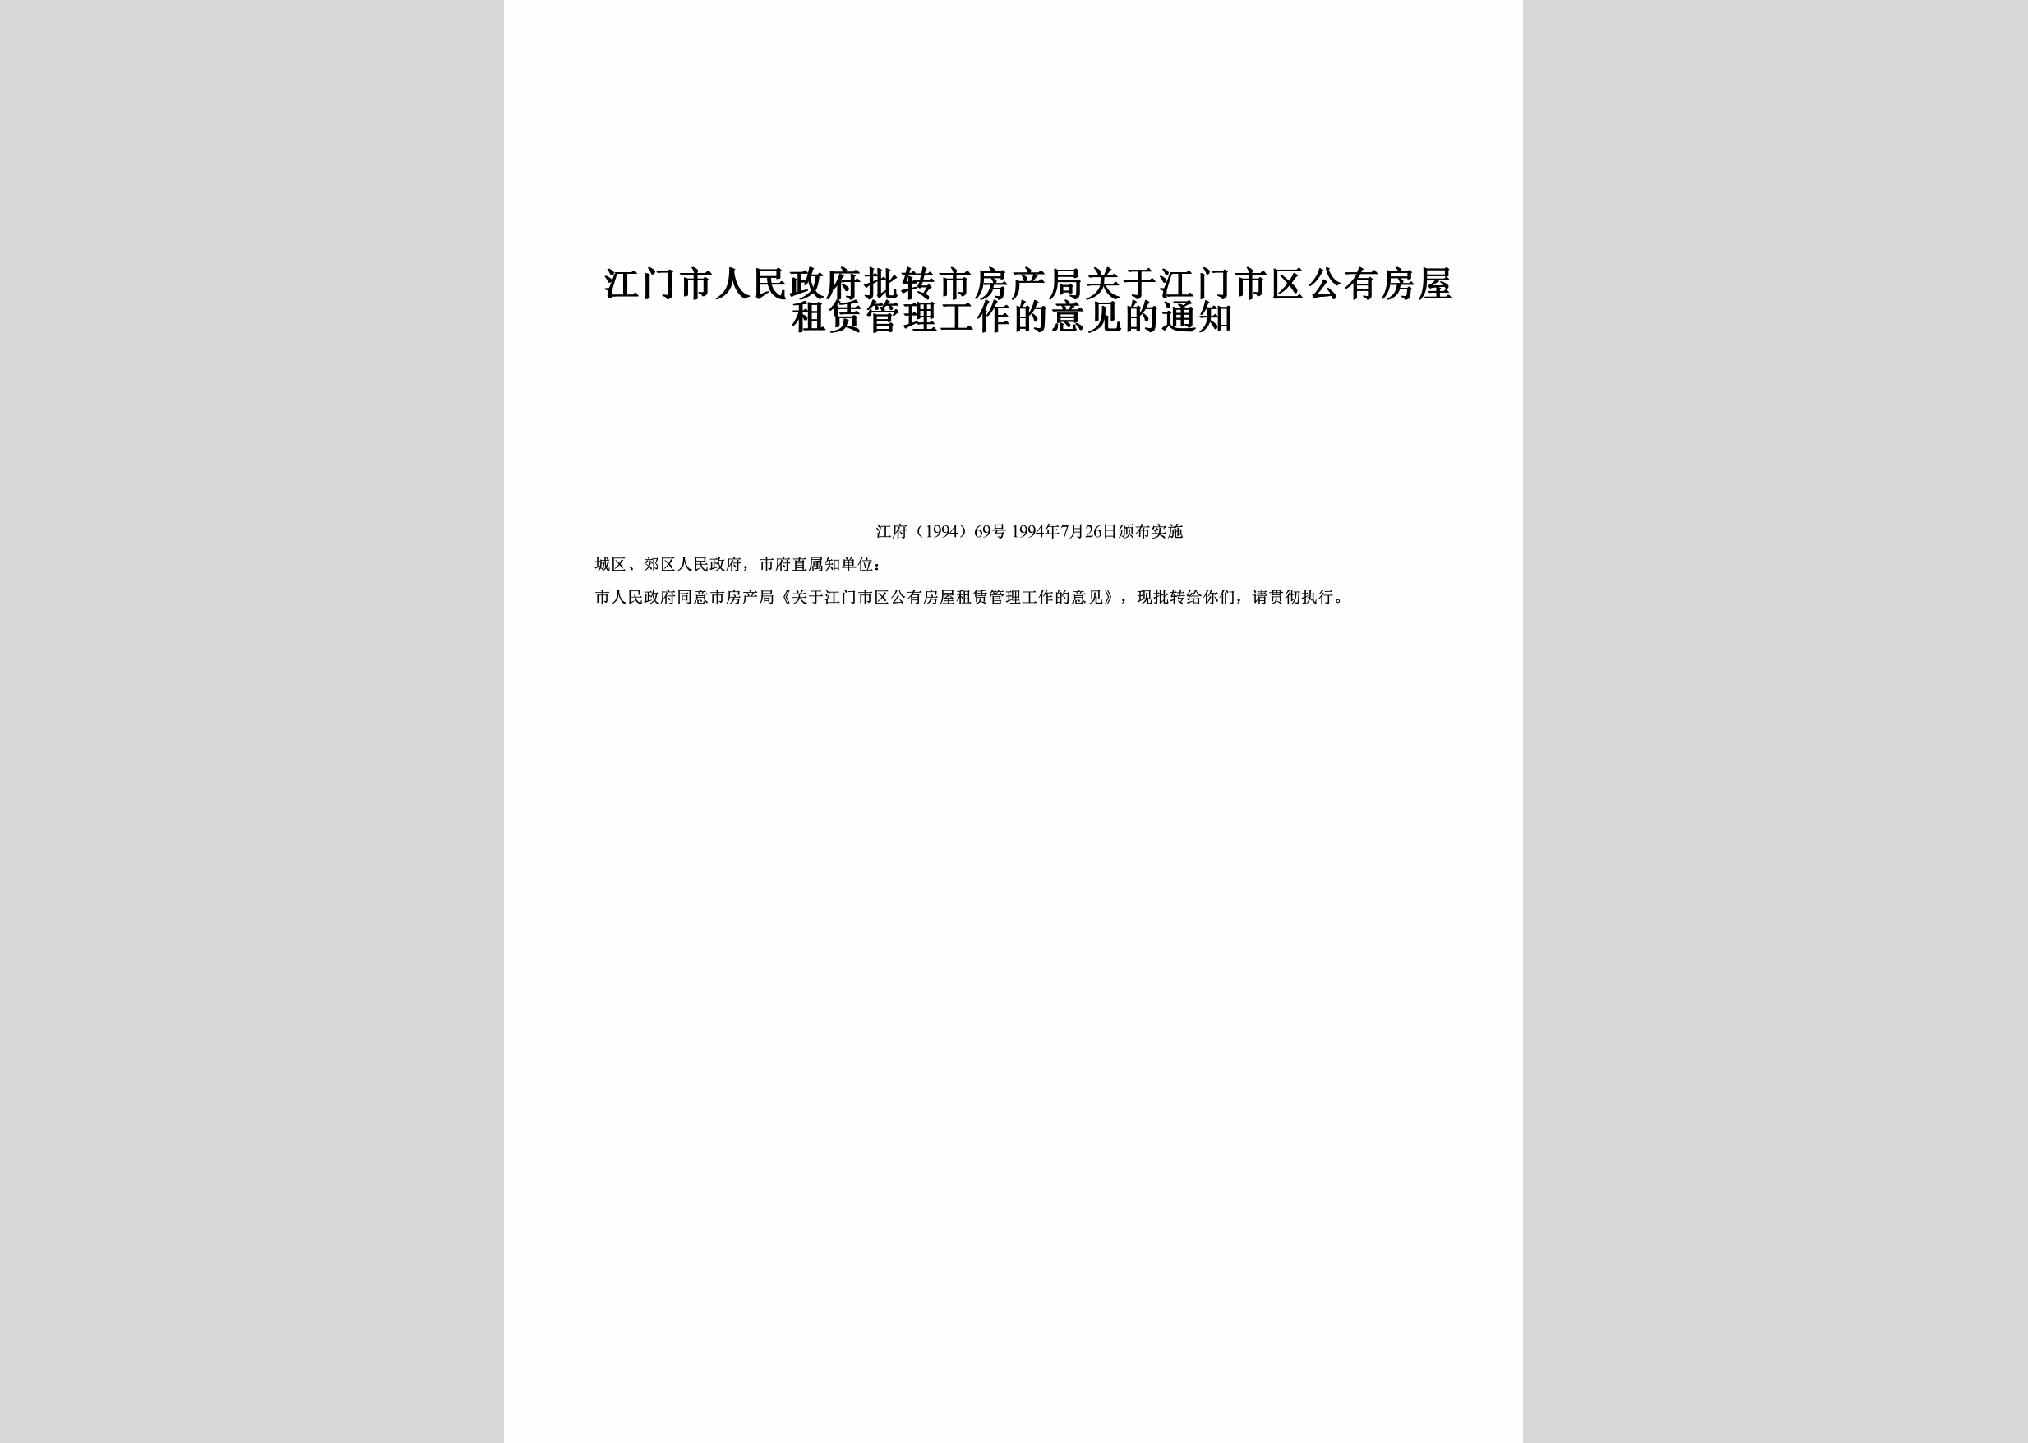 江府[1994]69号：批转市房产局关于江门市区公有房屋租赁管理工作的意见的通知